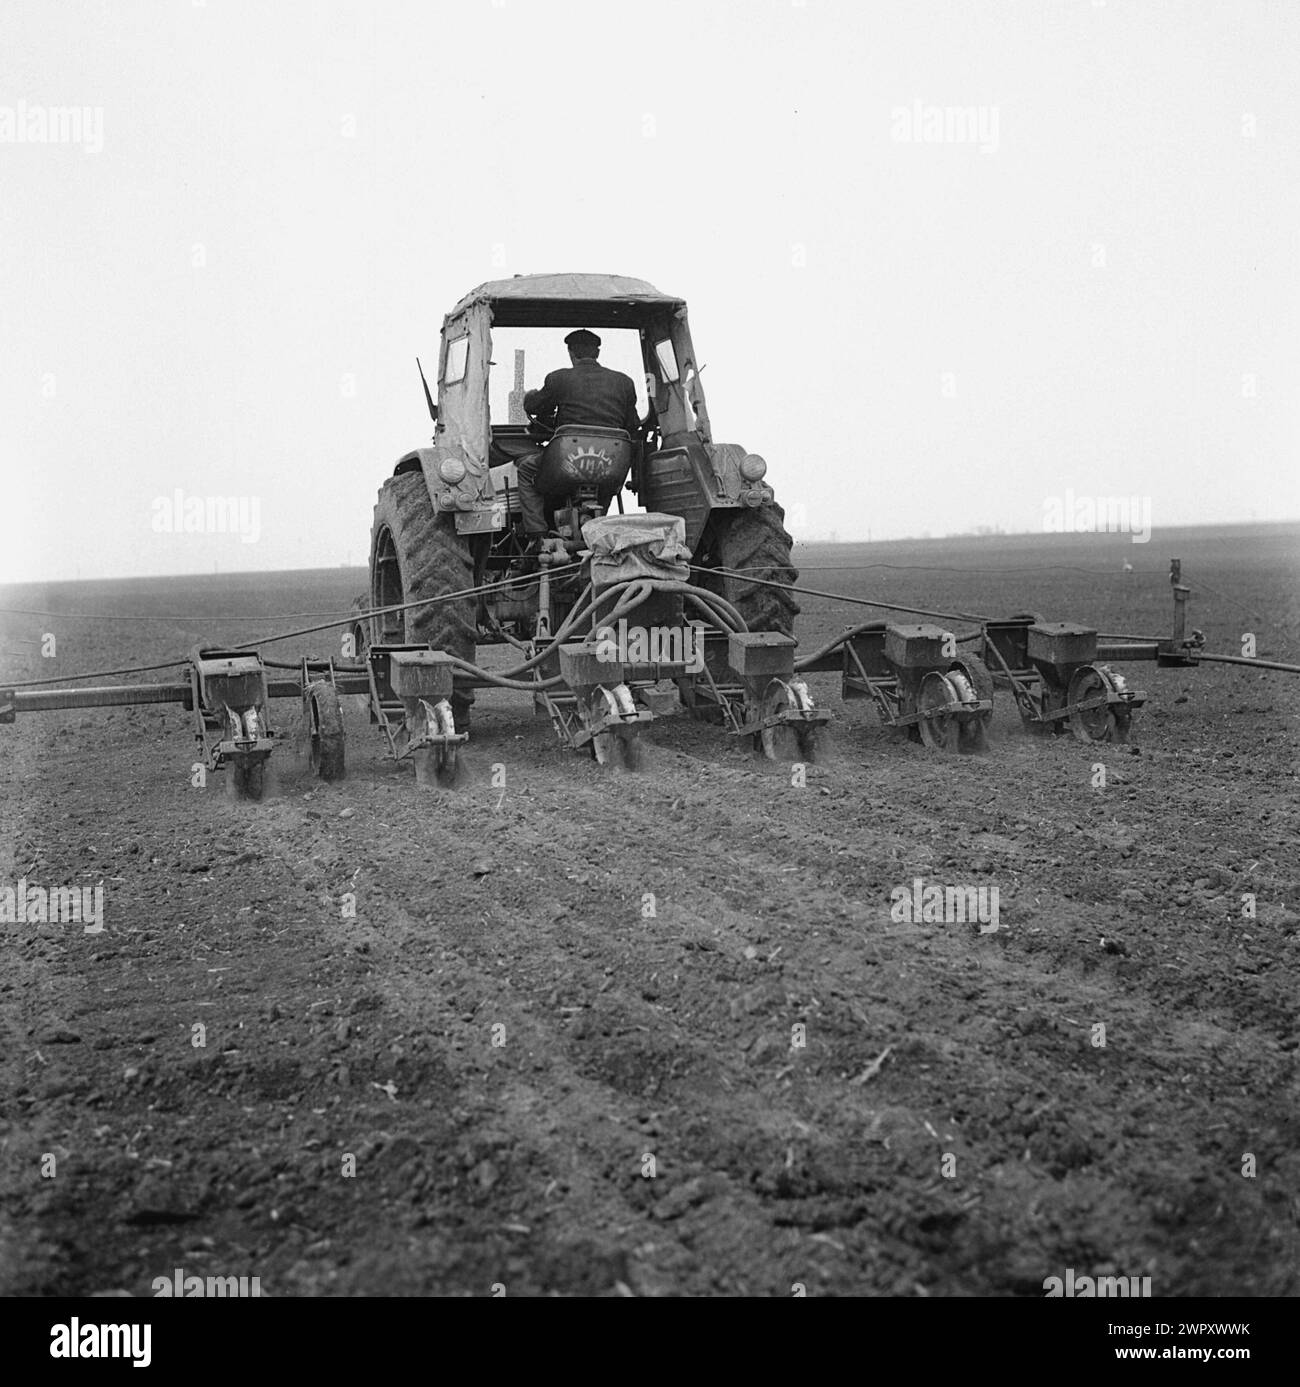 Une coopérative agricole d'État (C.A.P.) en Roumanie communiste, dans les années 1970 Tracteur plantant des semences dans un champ. Banque D'Images